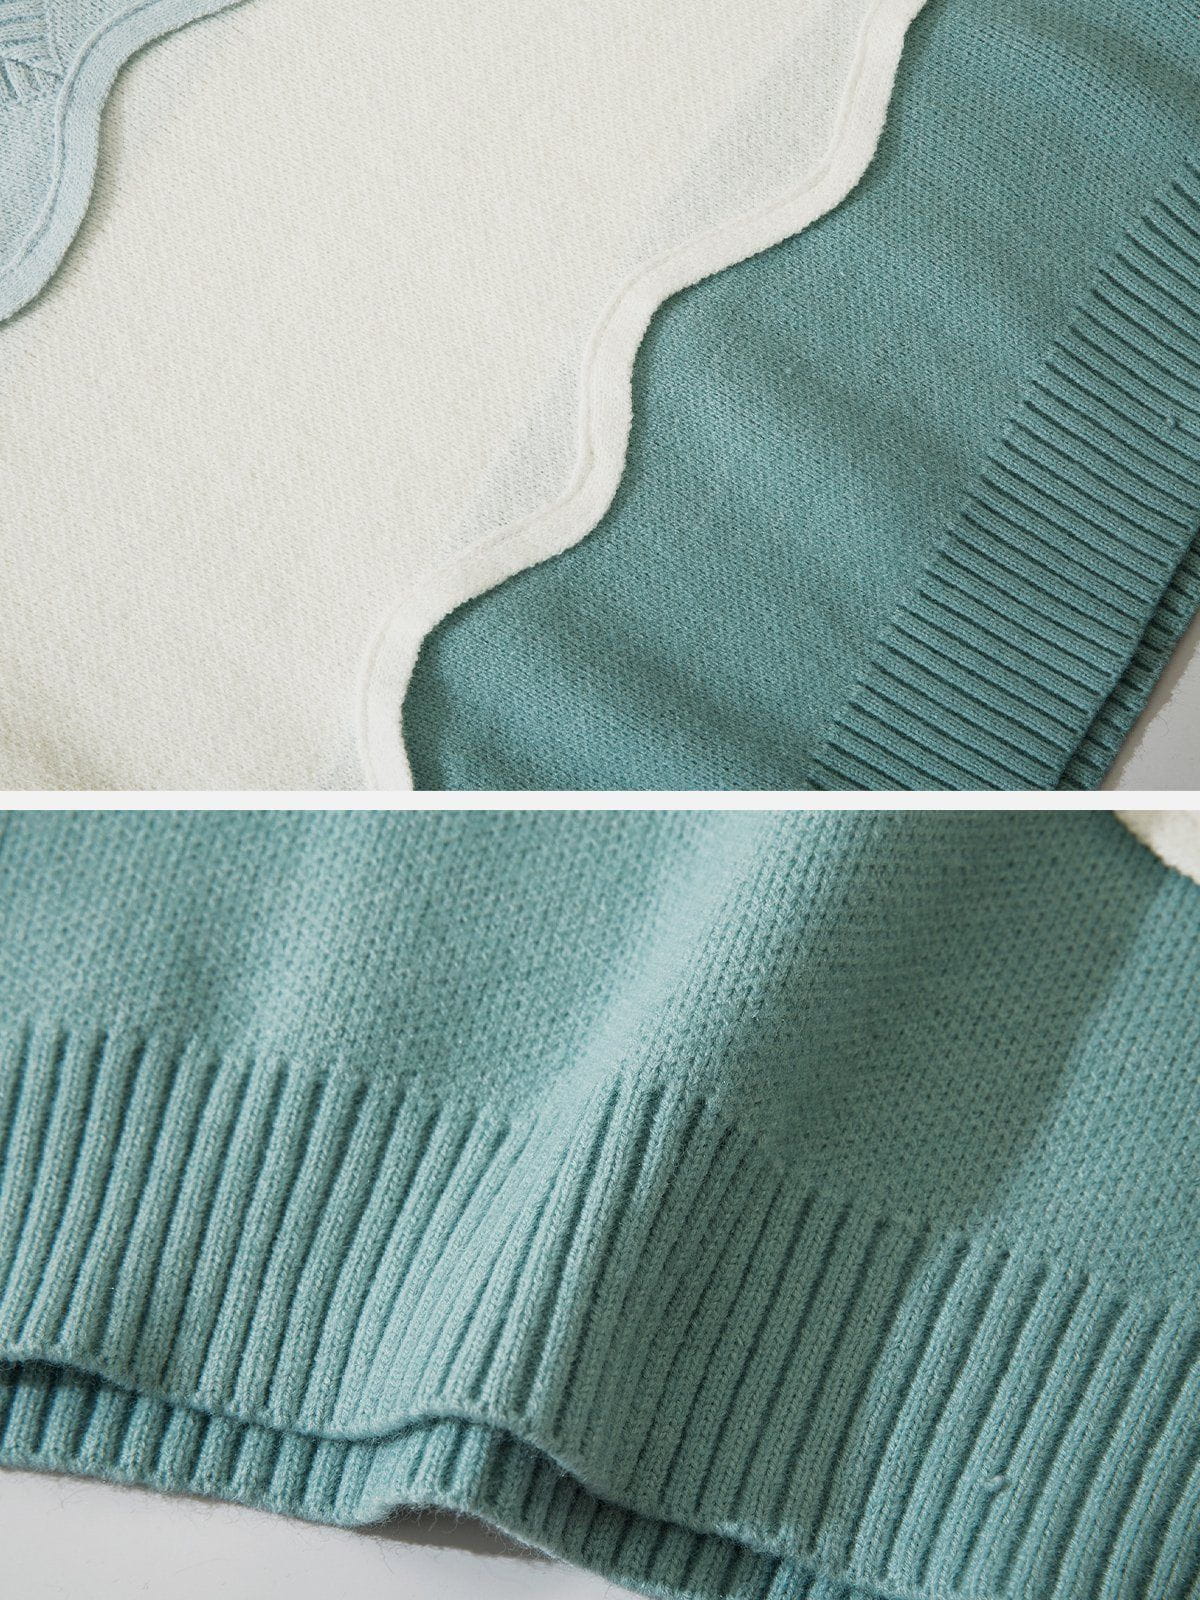 Eprezzy® - Tricolor Stitching Stripes Sweater Vest Streetwear Fashion - eprezzy.com